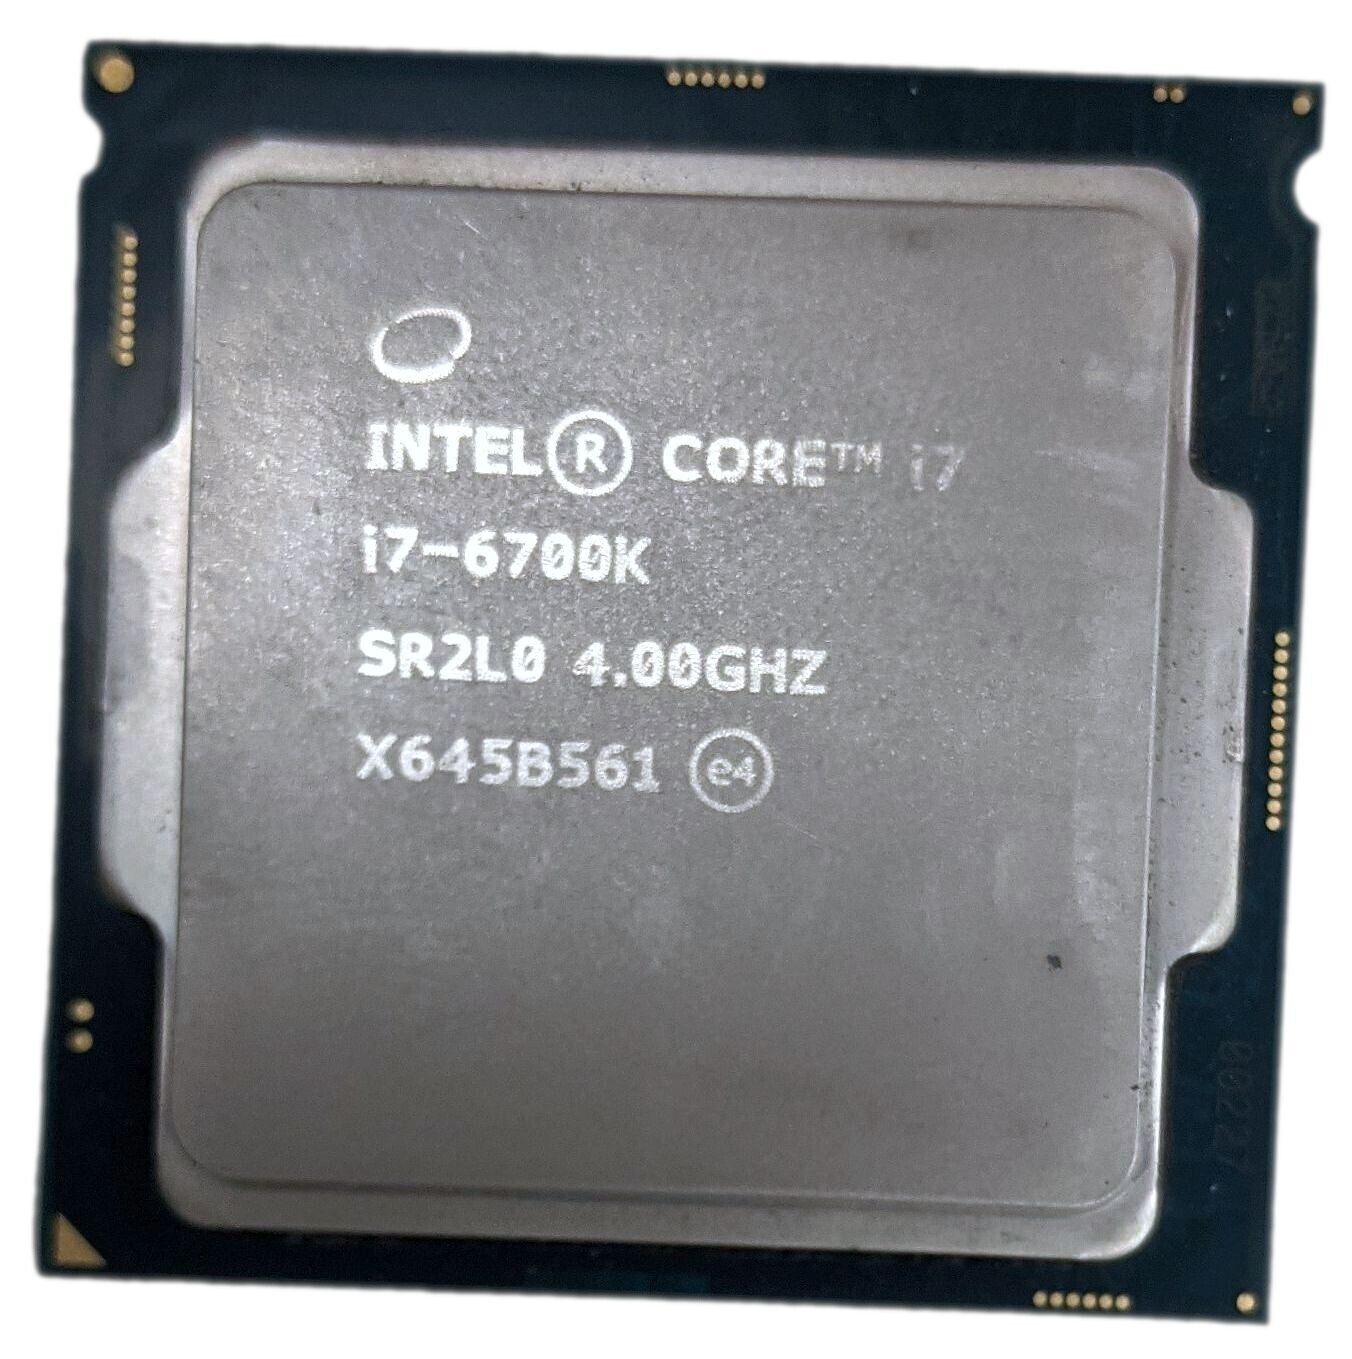 Intel Core i7-6700K 4.00GHz Quad-Core 8MB LGA 1151/Socket H4 CPU Processor SR2L0